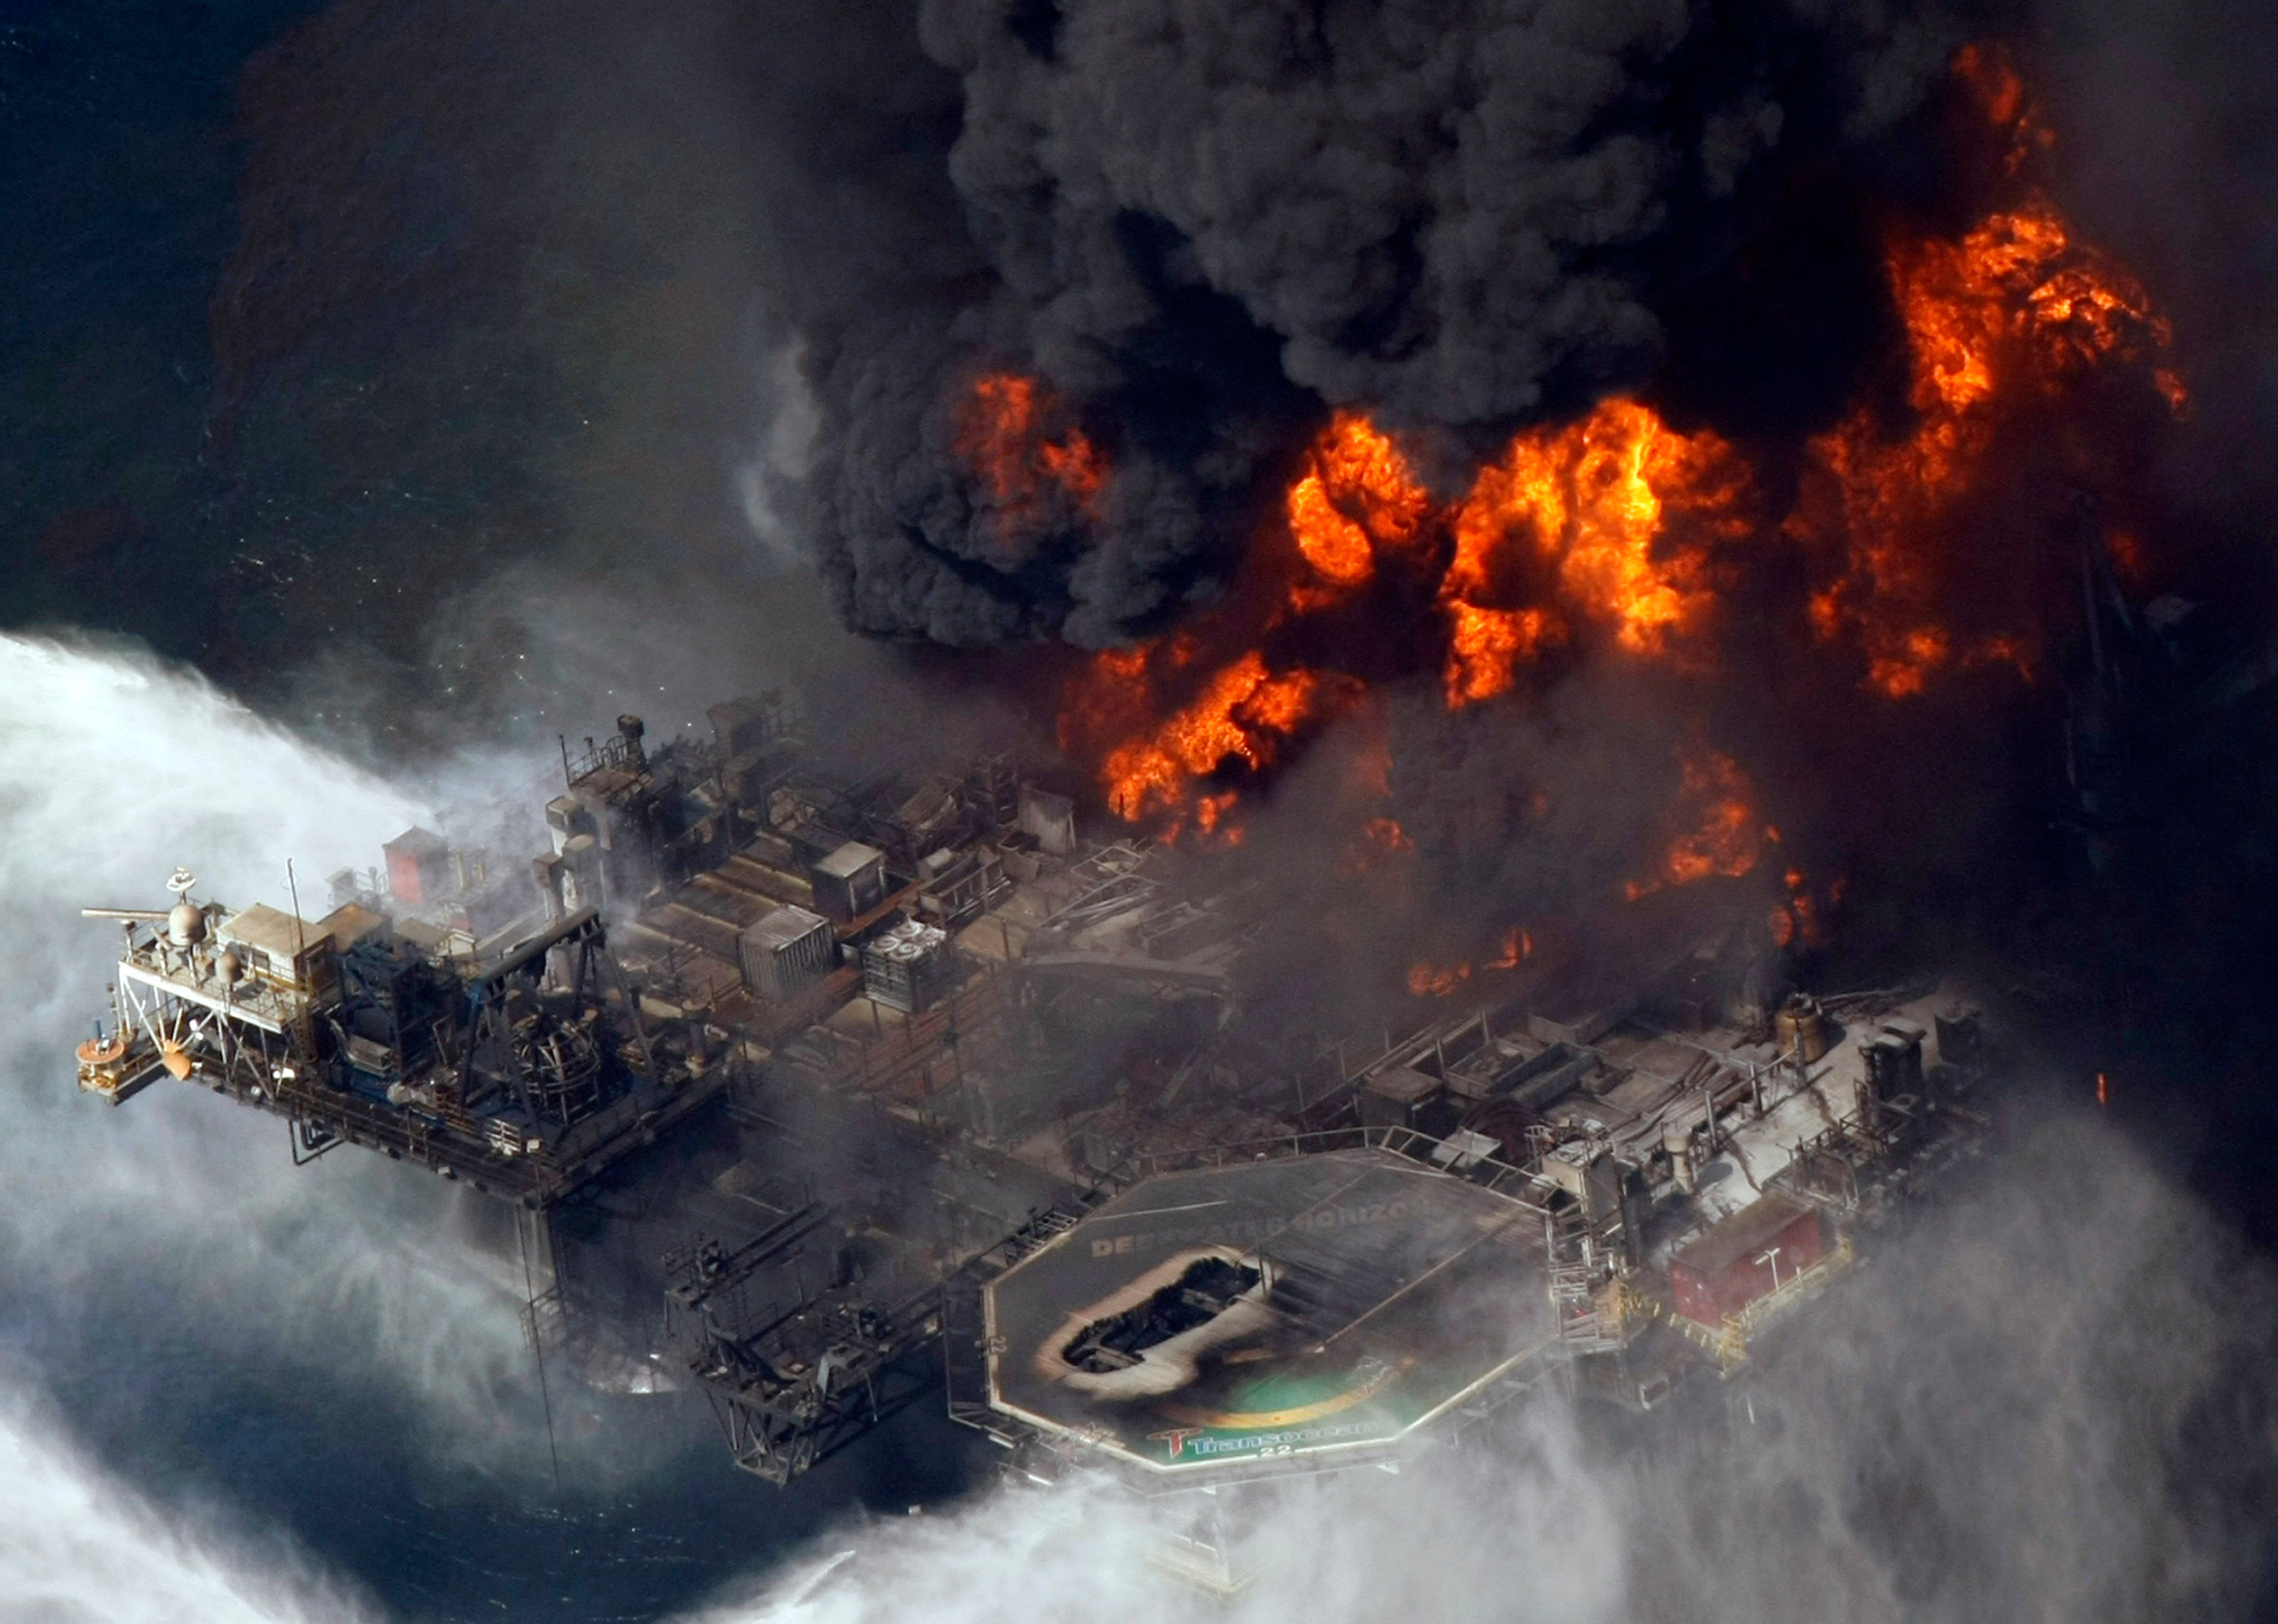 Какая самая крупная катастрофа. Взрыв в мексиканском заливе авария на нефтяной платформе Deepwater Horizon. Взрыв нефтяной платформы Deepwater Horizon - 20 апреля 2010 года. Катастрофа Deepwater Horizon в мексиканском заливе. Взрыв нефтяной платформы Deepwater Horizon в мексиканском заливе 2010.